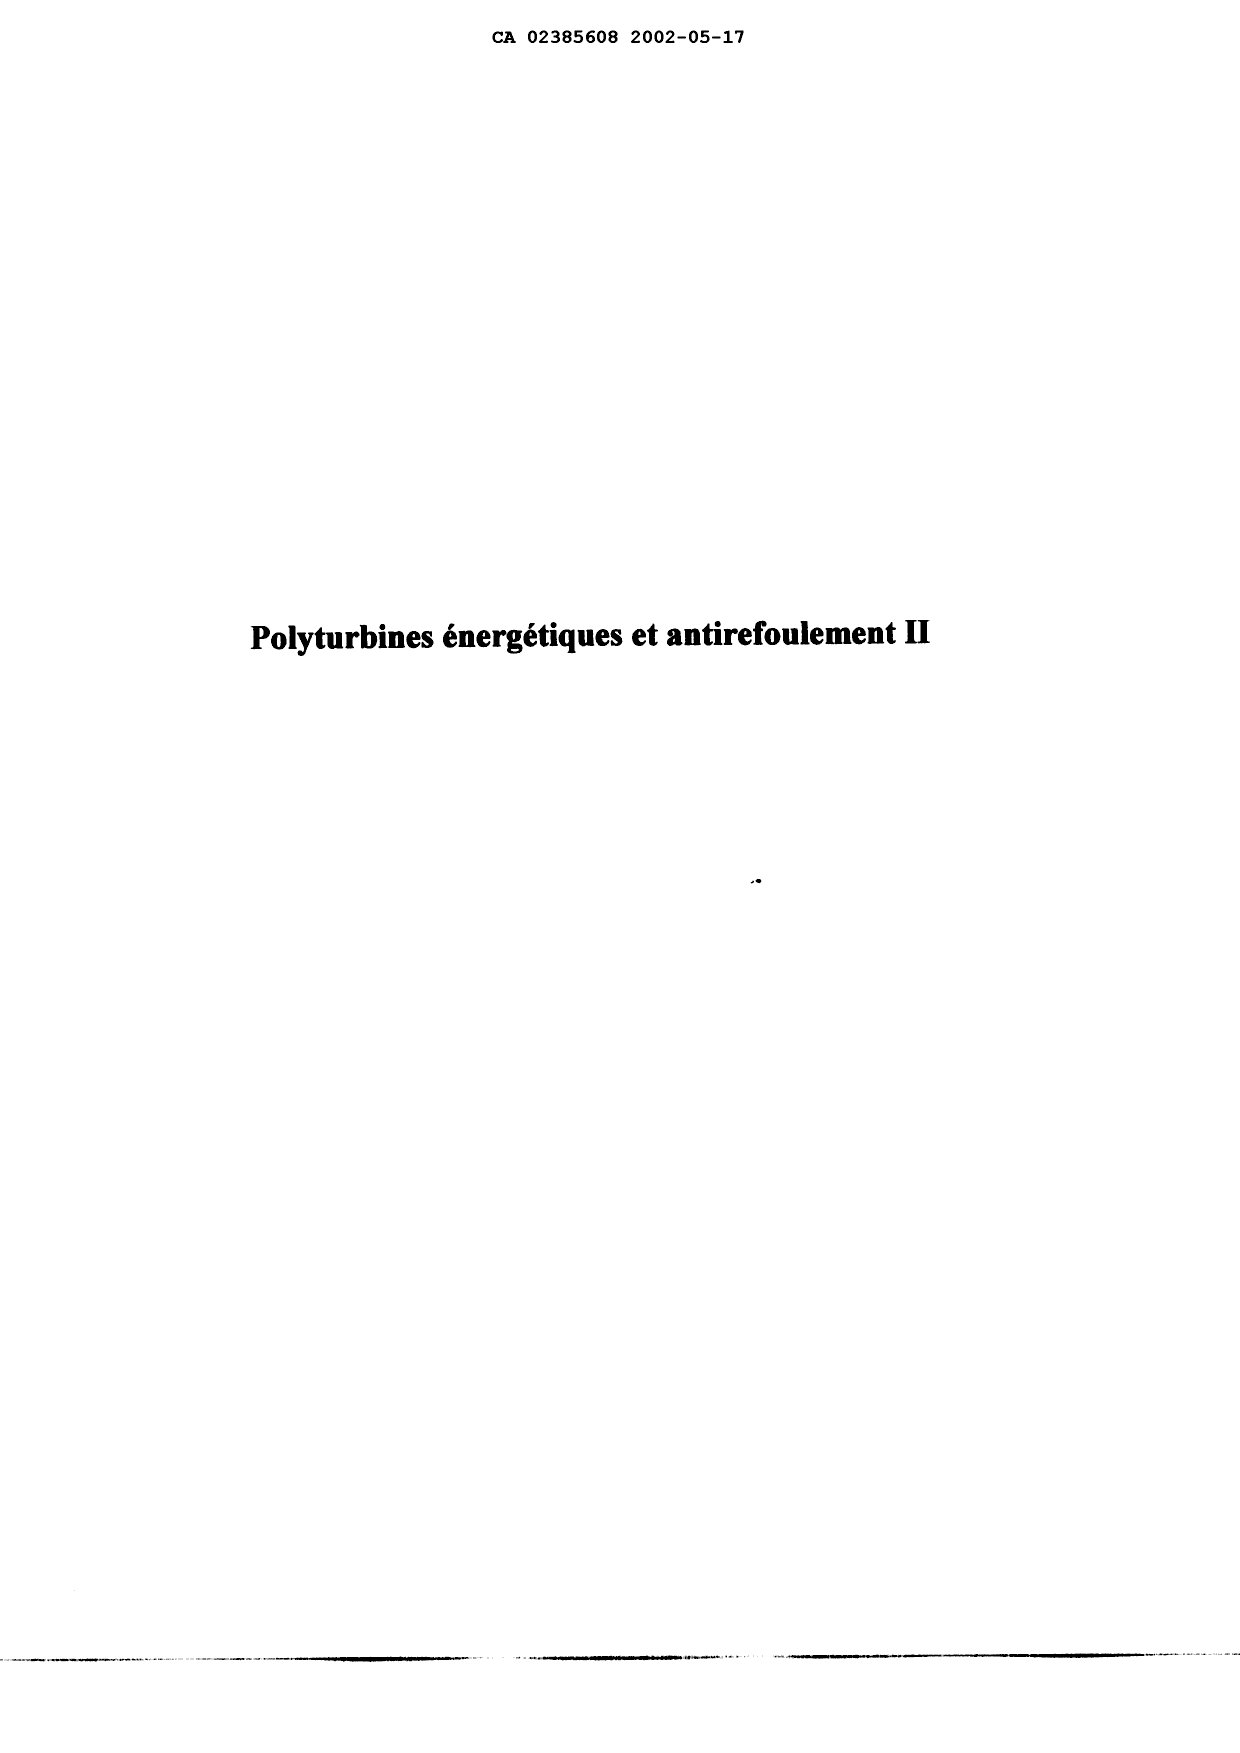 Canadian Patent Document 2385608. Description 20020517. Image 1 of 58